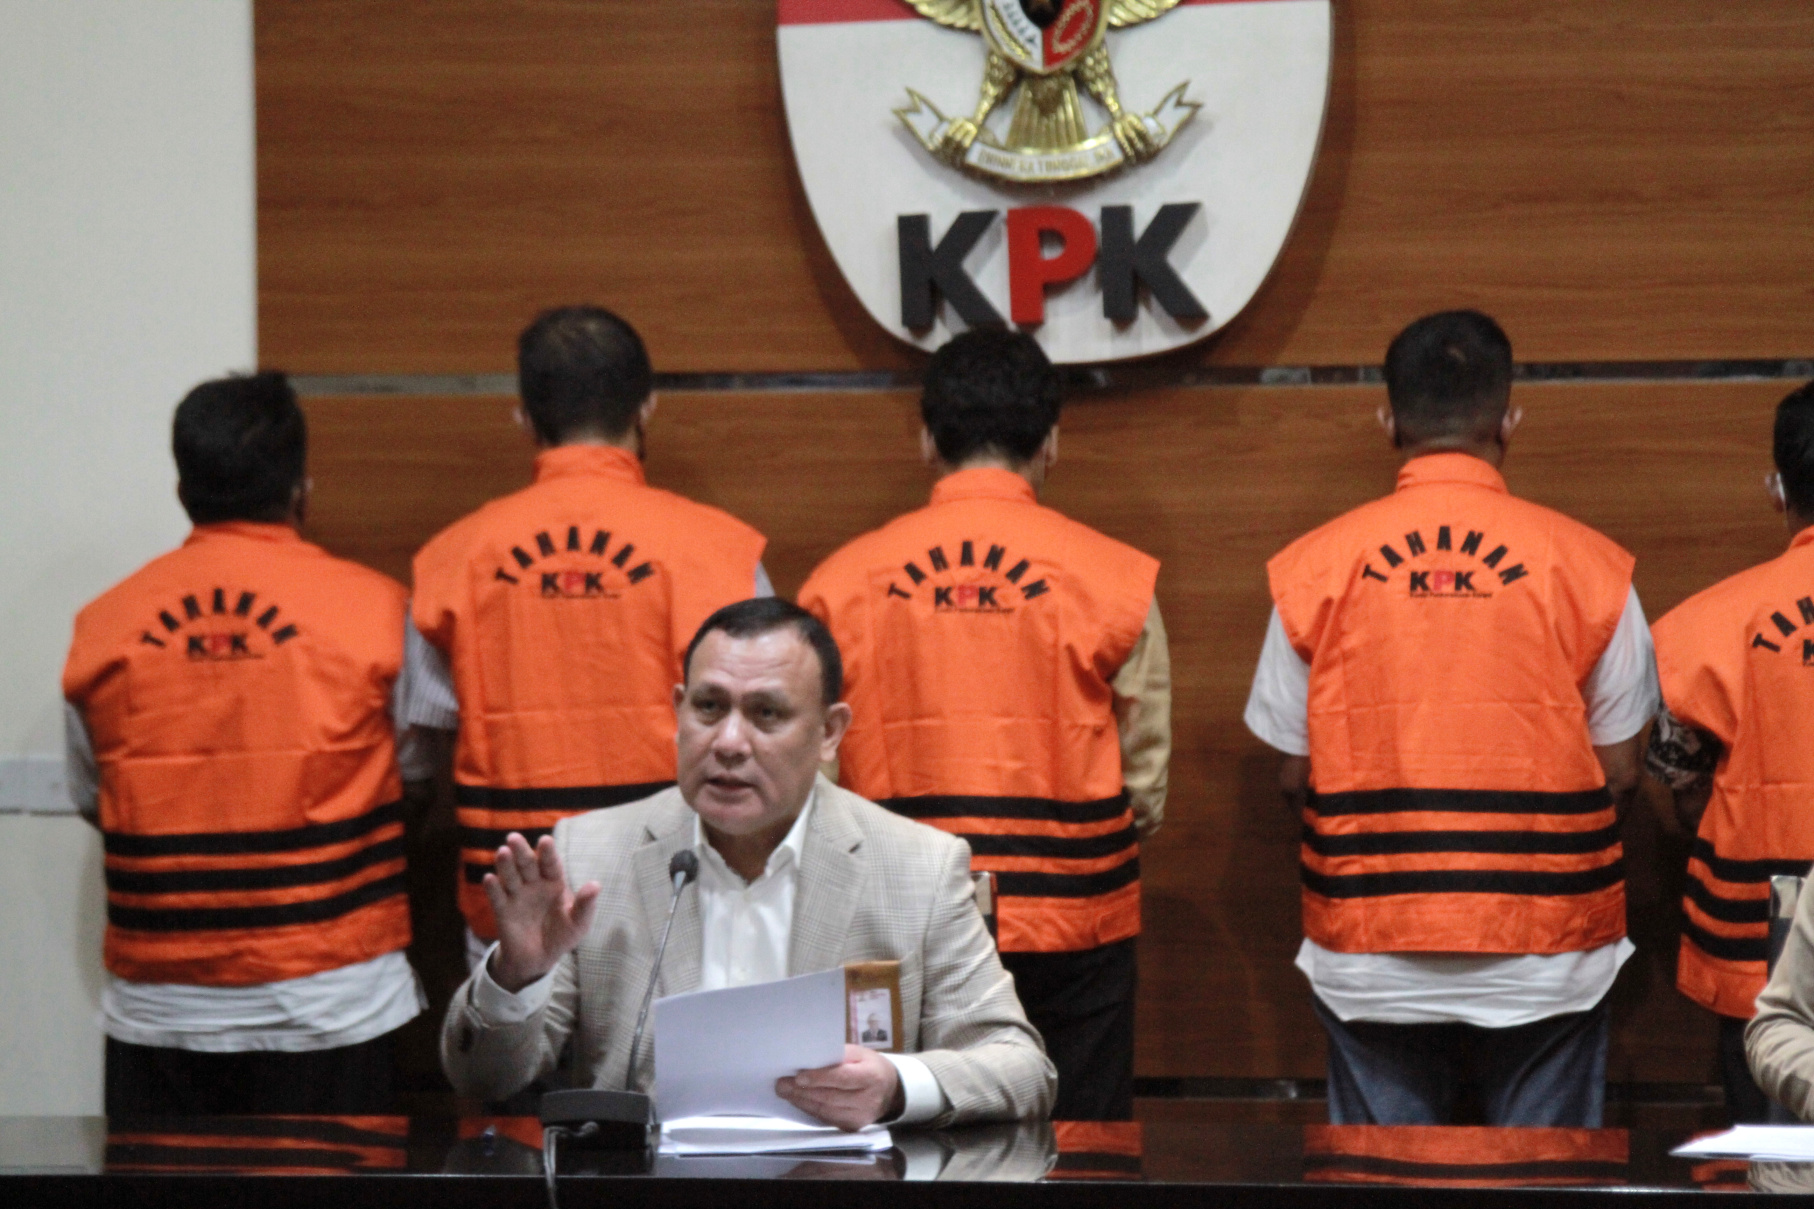 KPK resmi melakukan penahanan terhadap Bupati Bangkalan R. Abdul Latif Amin Imron dan lima tersangka bawahannya (Ashar/Sinpo.id)